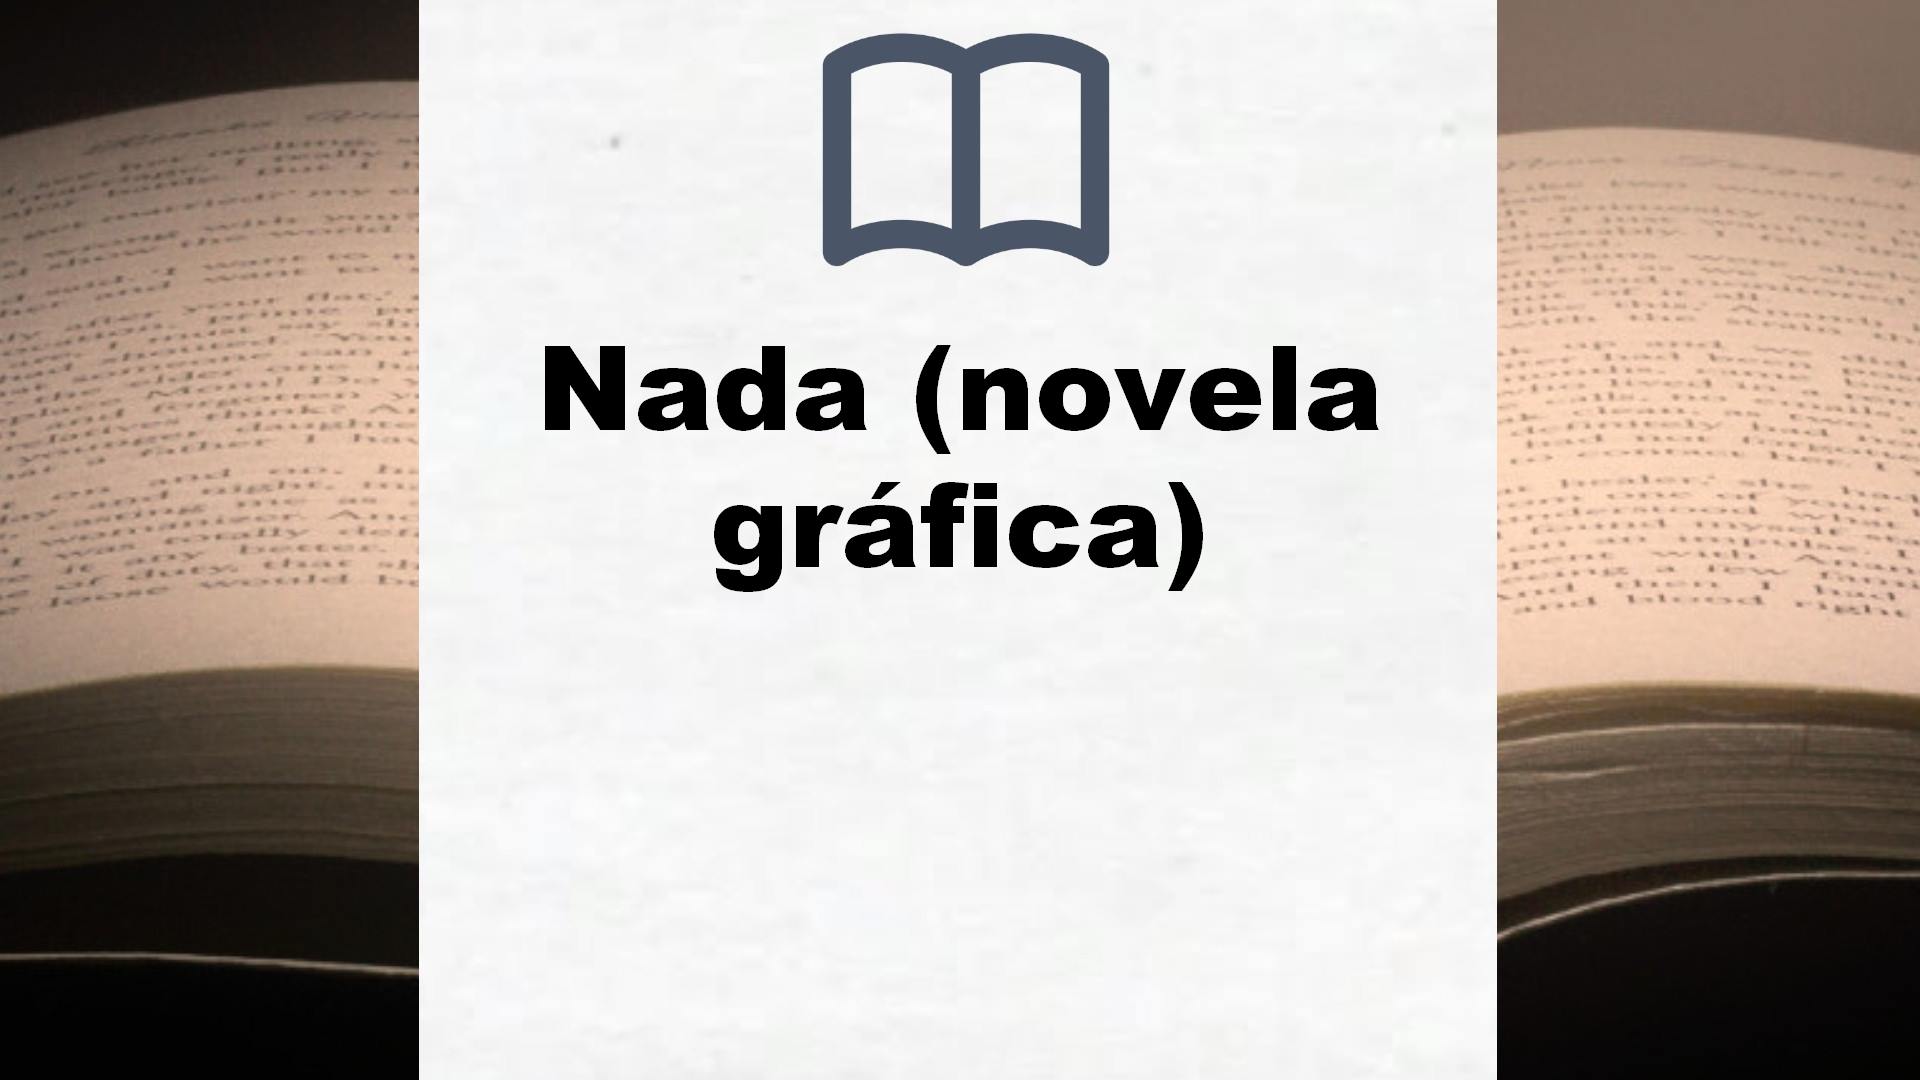 Nada (novela gráfica) – Reseña del libro